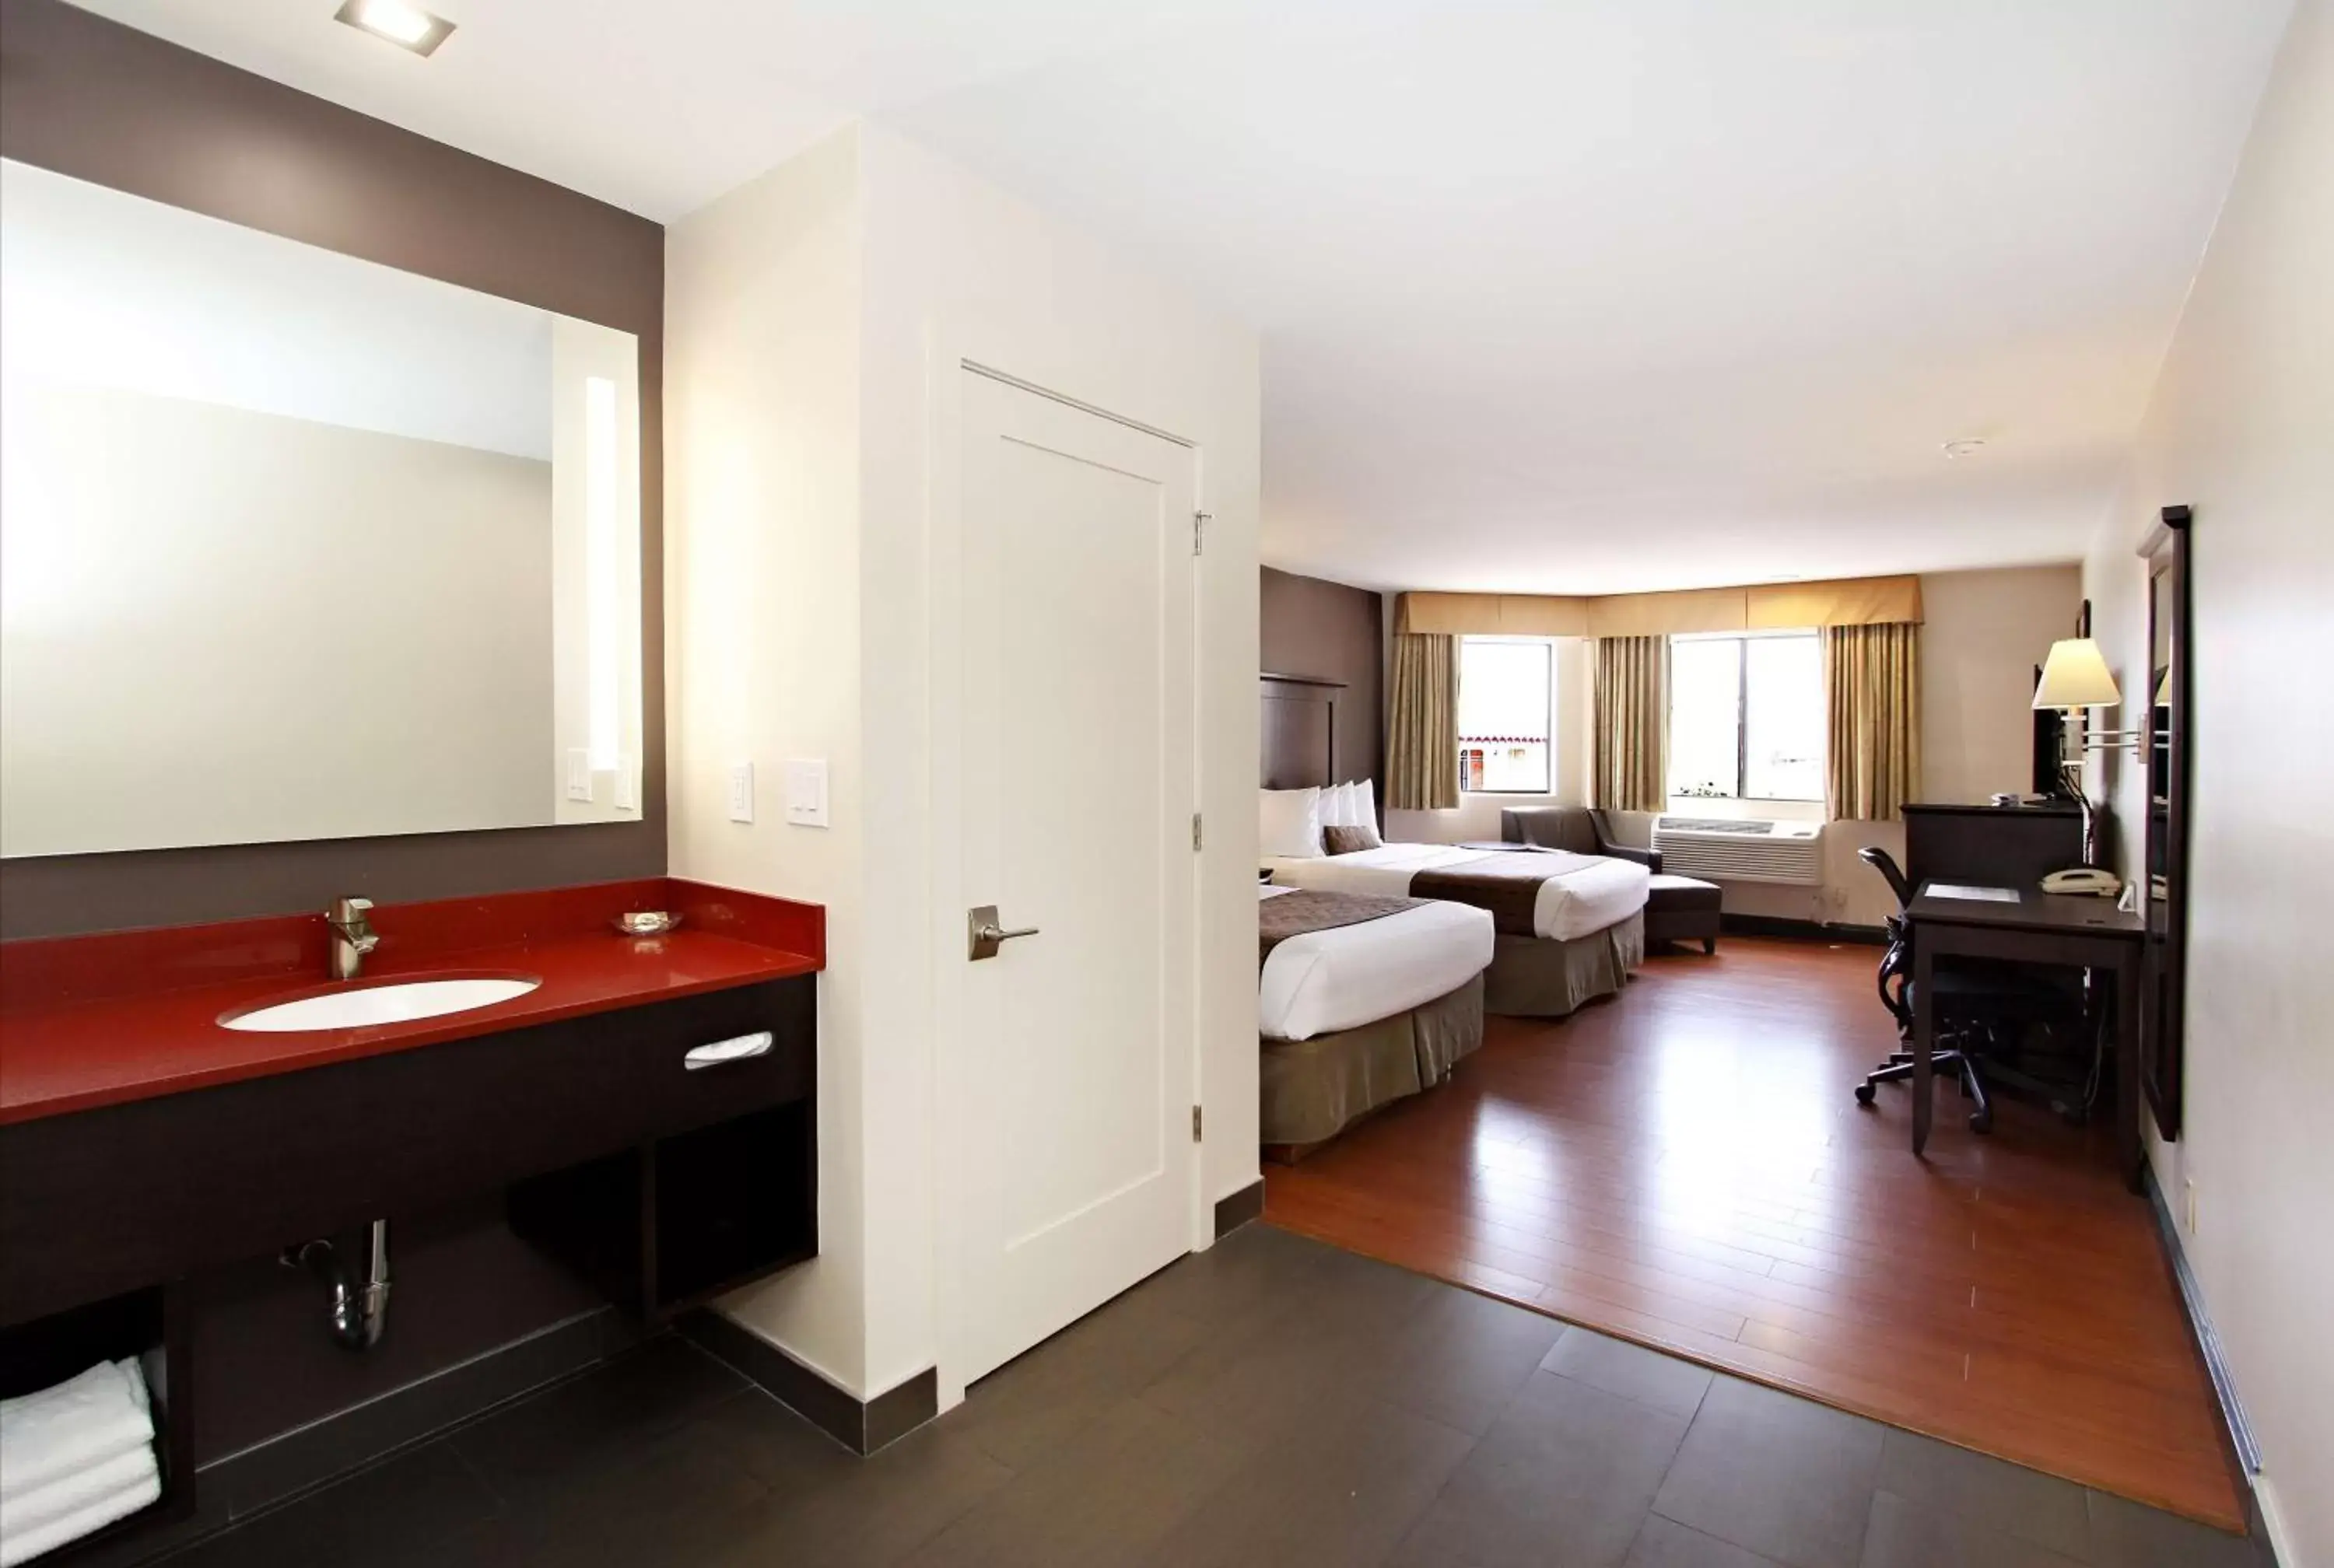 Bedroom, Bathroom in Best Western Plus Dragon Gate Inn